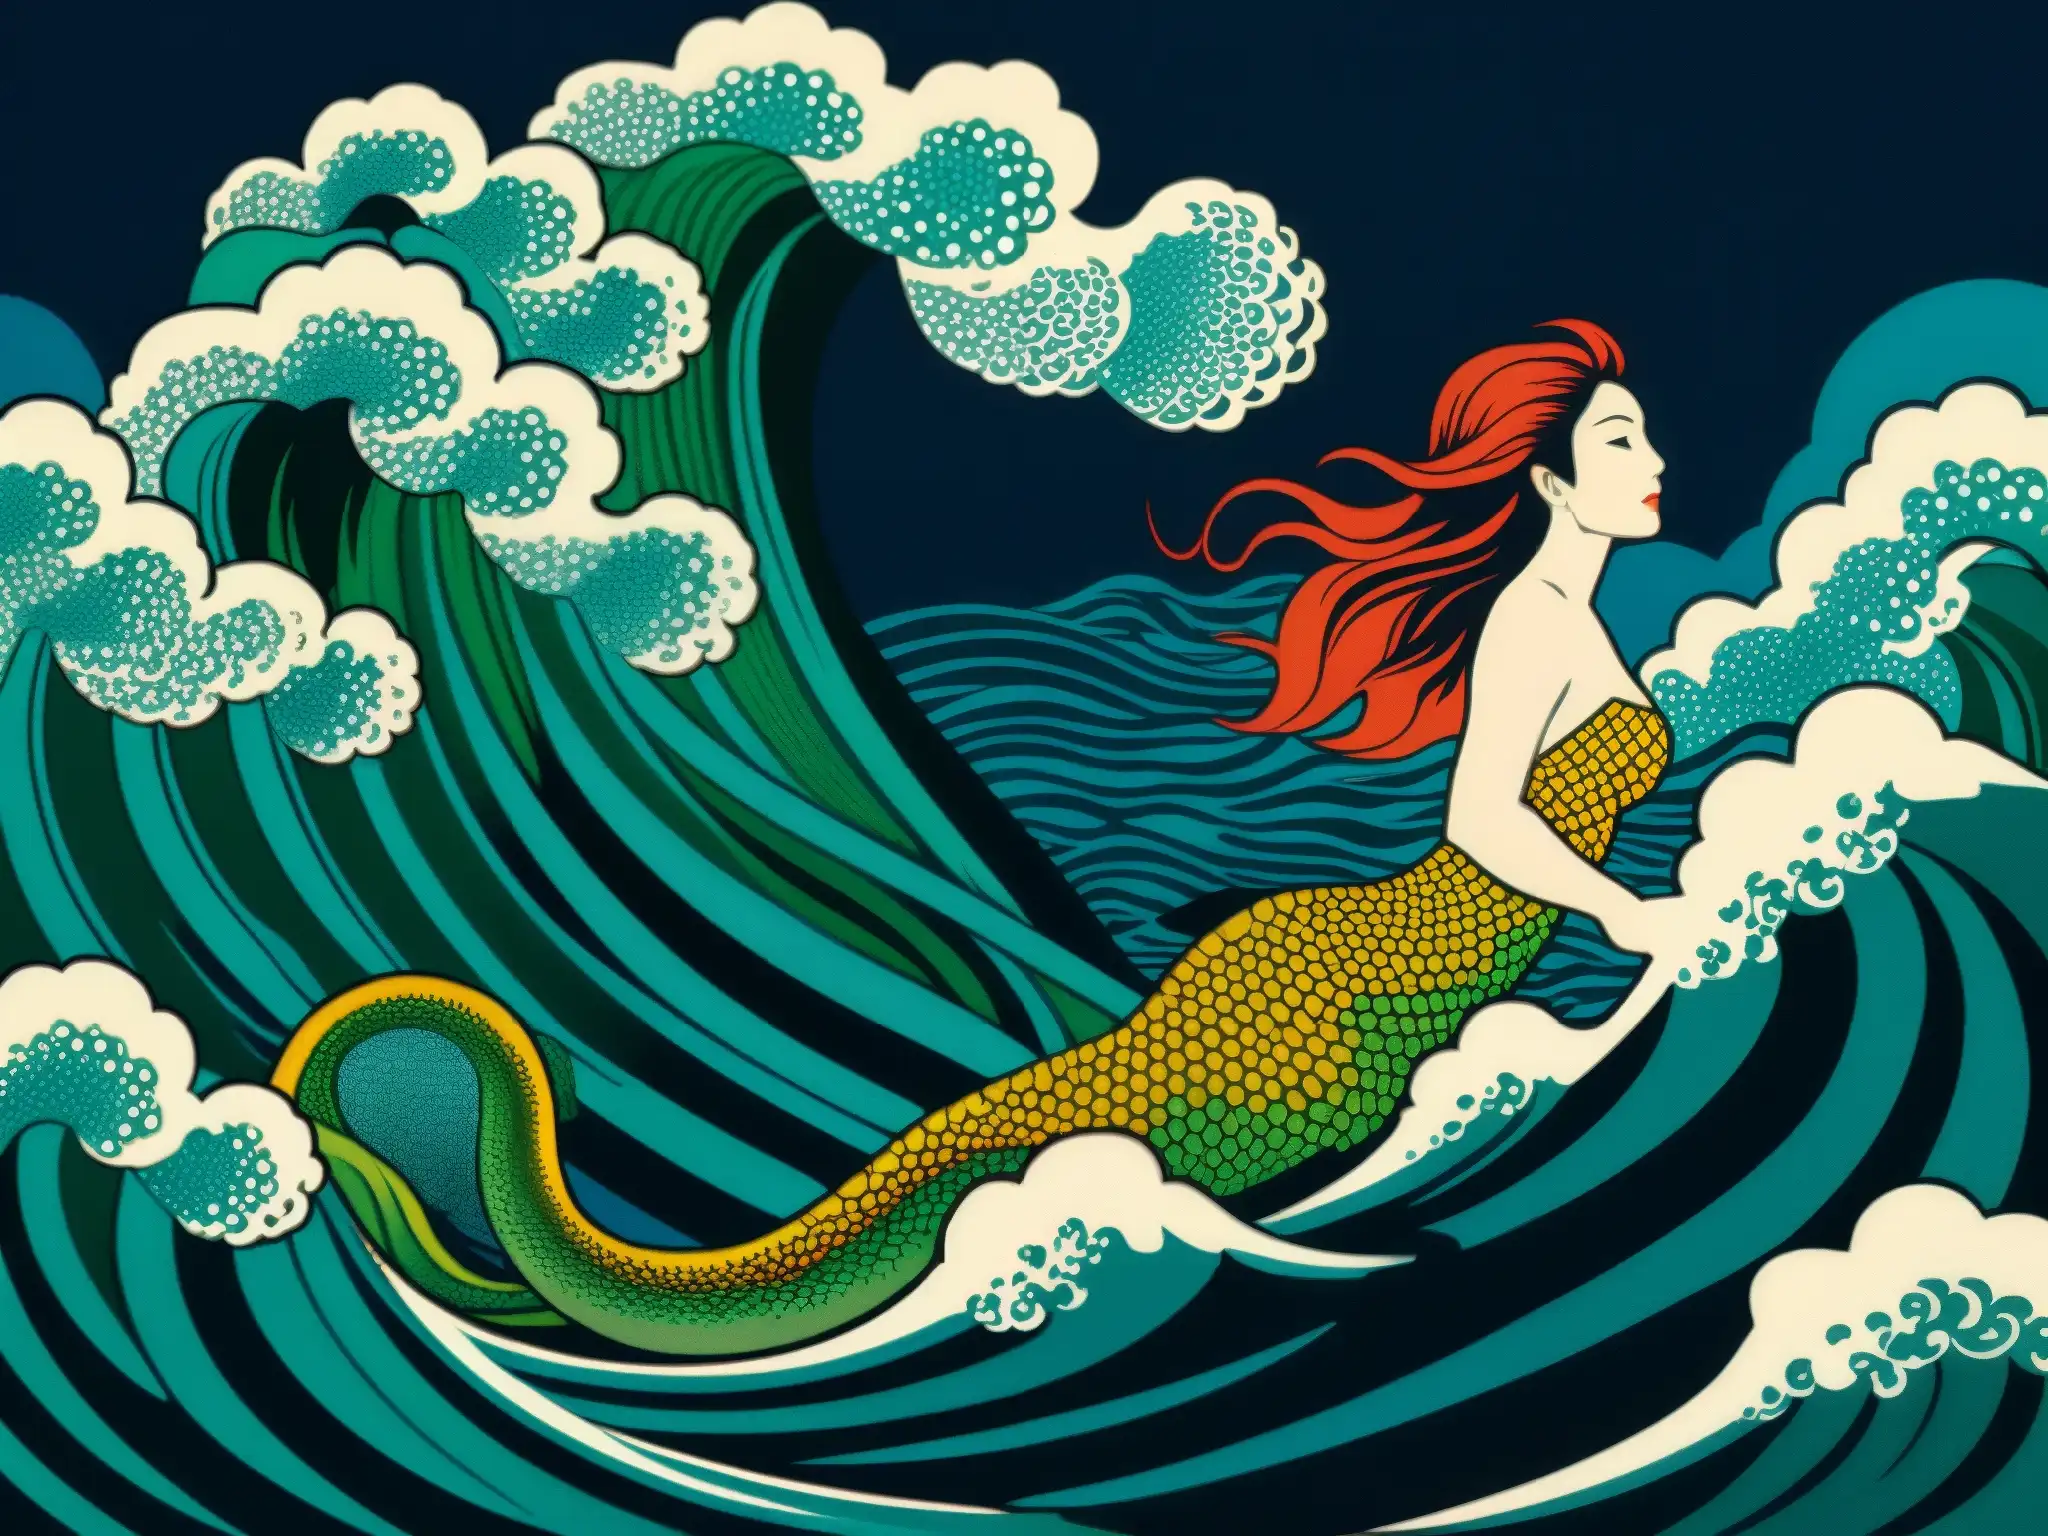 Una impresionante xilografía japonesa de un dragón sirena emergiendo de un mar turbulento